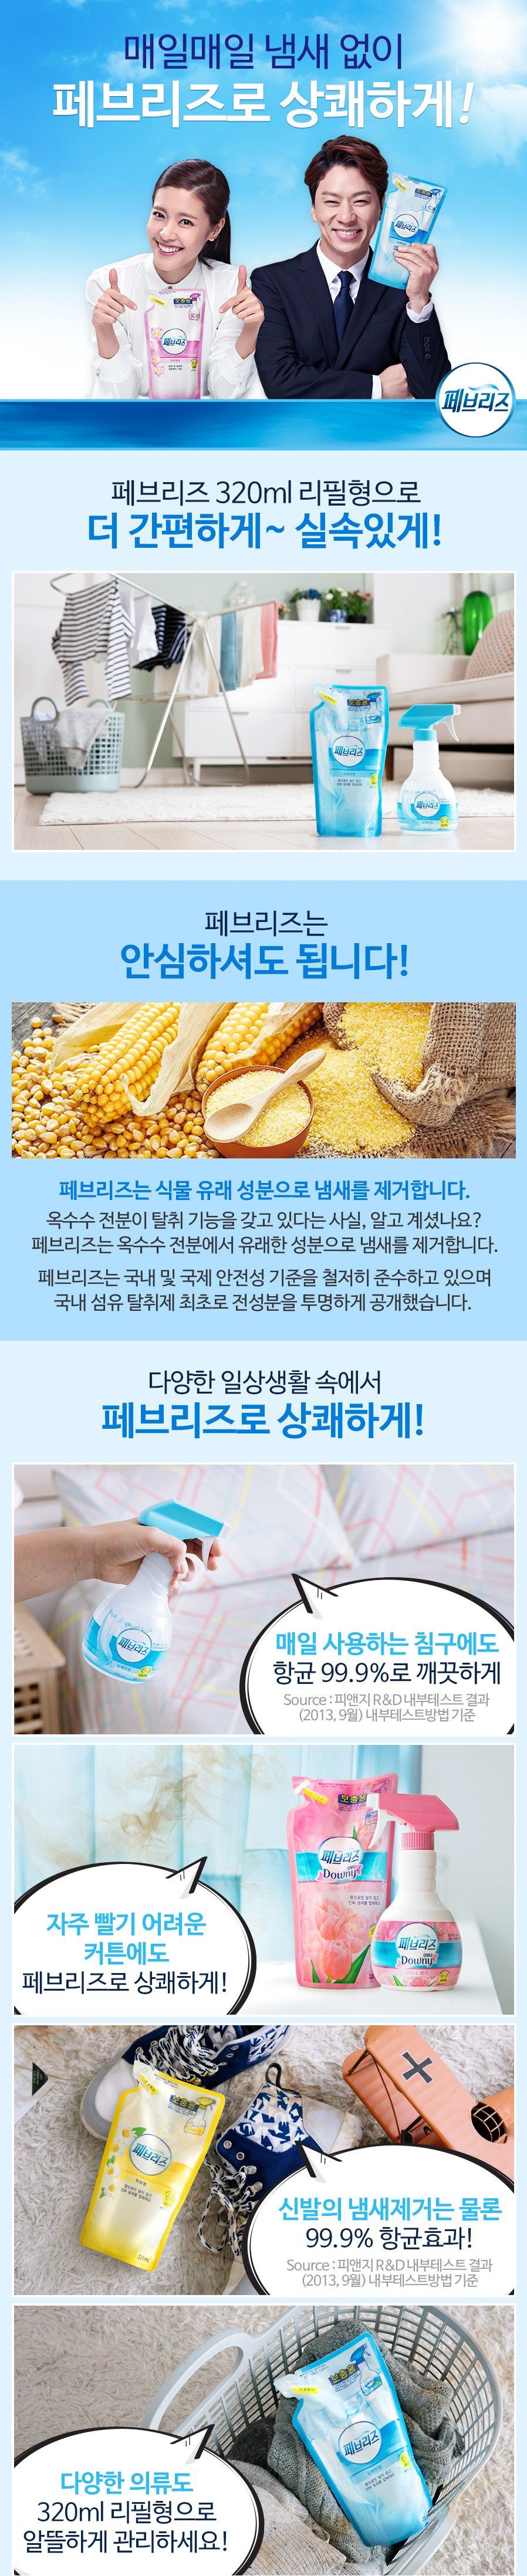 韓國食品-[P&G] Febreze Refill[Mild] 320ml